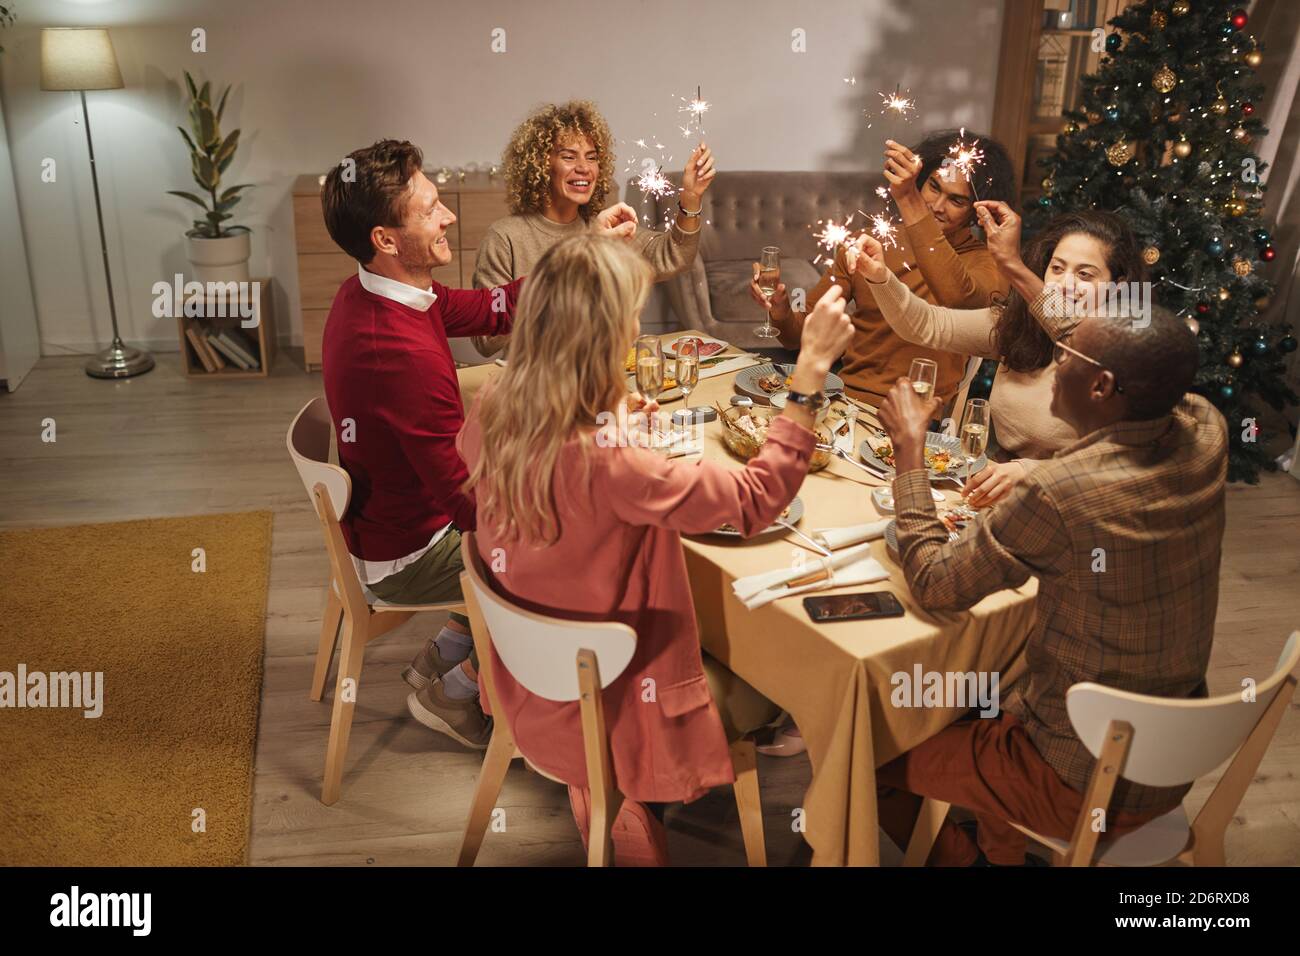 Vista grandangolare delle persone che brindano con bicchieri di champagne mentre si gusta la cena con gli amici e la famiglia, mentre si tengono gli sparklers, copy space Foto Stock